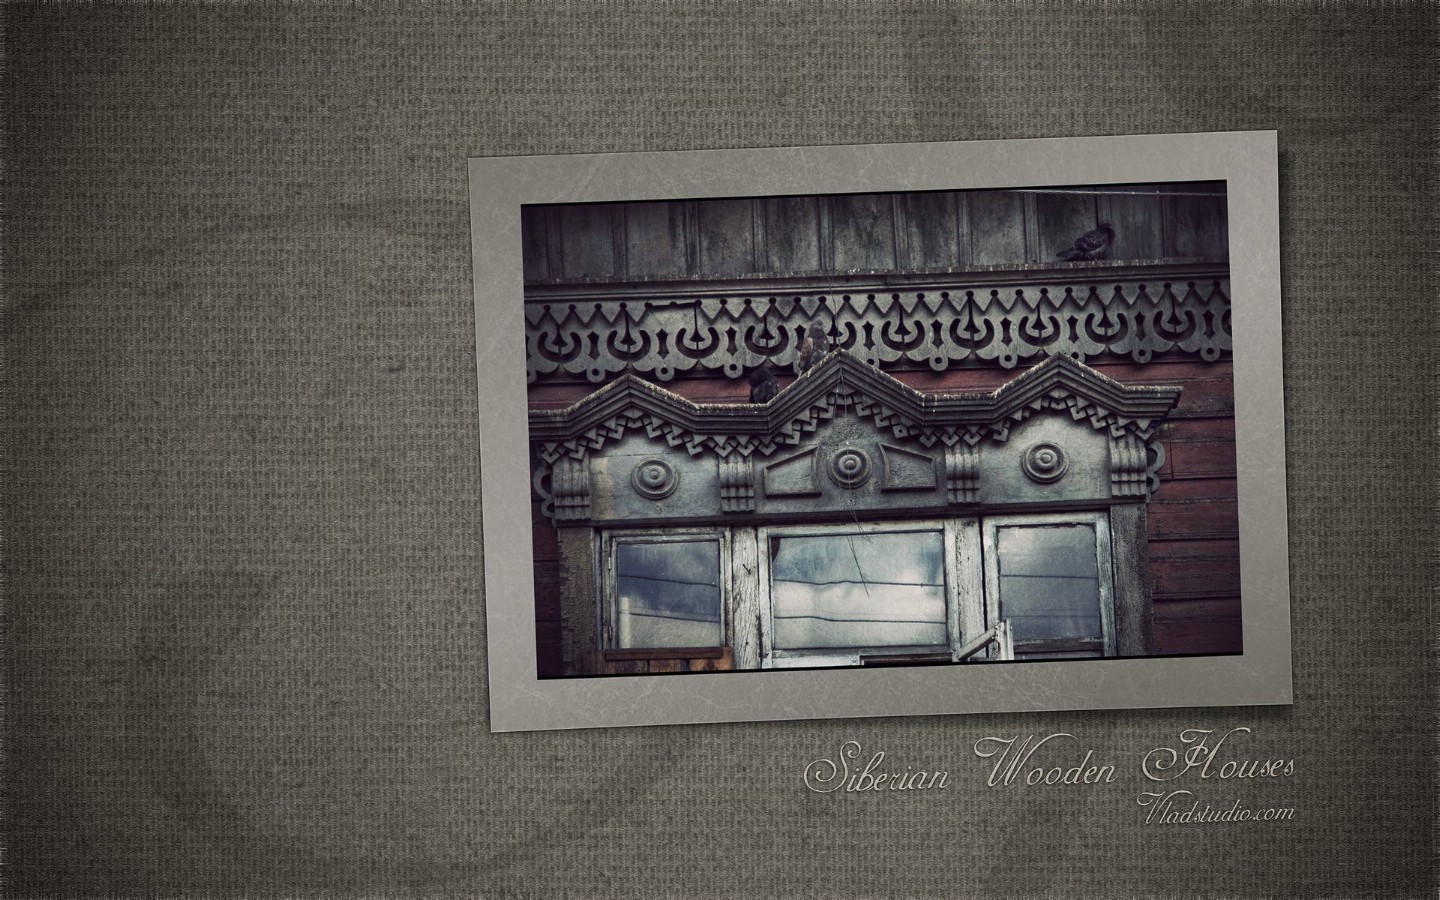 壁纸1440x900异国情调 西伯利亚的木房子壁纸 一 西伯利亚的老式的木房子图片壁纸 西伯利亚风情古老的木房子(一)壁纸 西伯利亚风情古老的木房子(一)图片 西伯利亚风情古老的木房子(一)素材 人文壁纸 人文图库 人文图片素材桌面壁纸